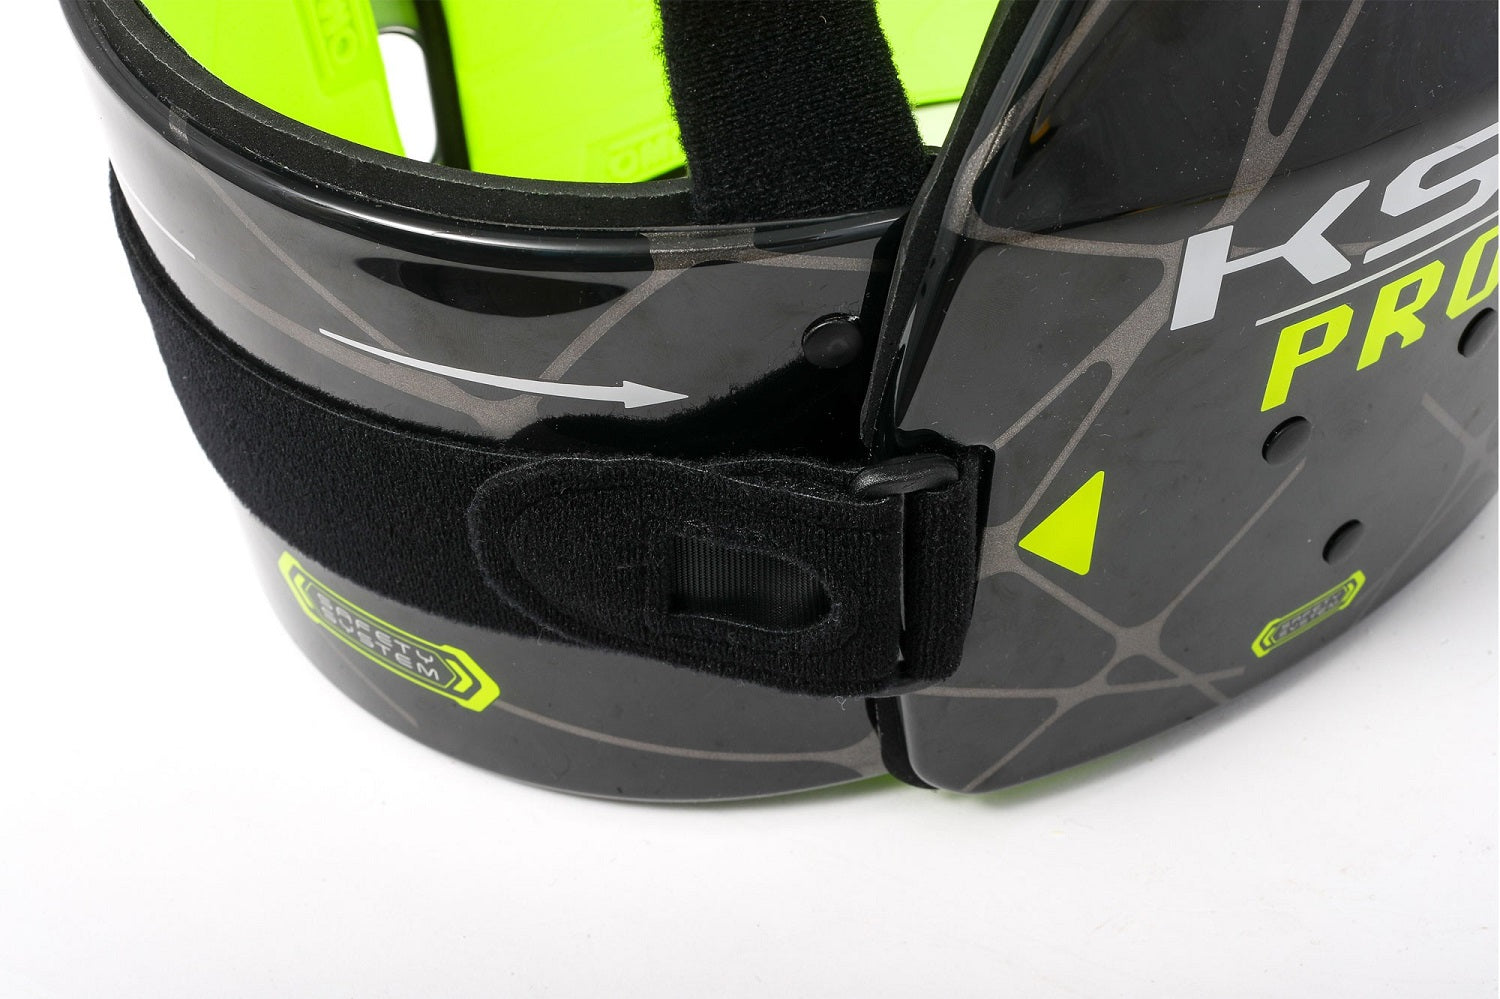 OMP KK0-0049-B01-178-M (KK049E178M) KS-1 PRO Karting Body Protection, FIA 8870-2018, black/yellow, size M Photo-1 